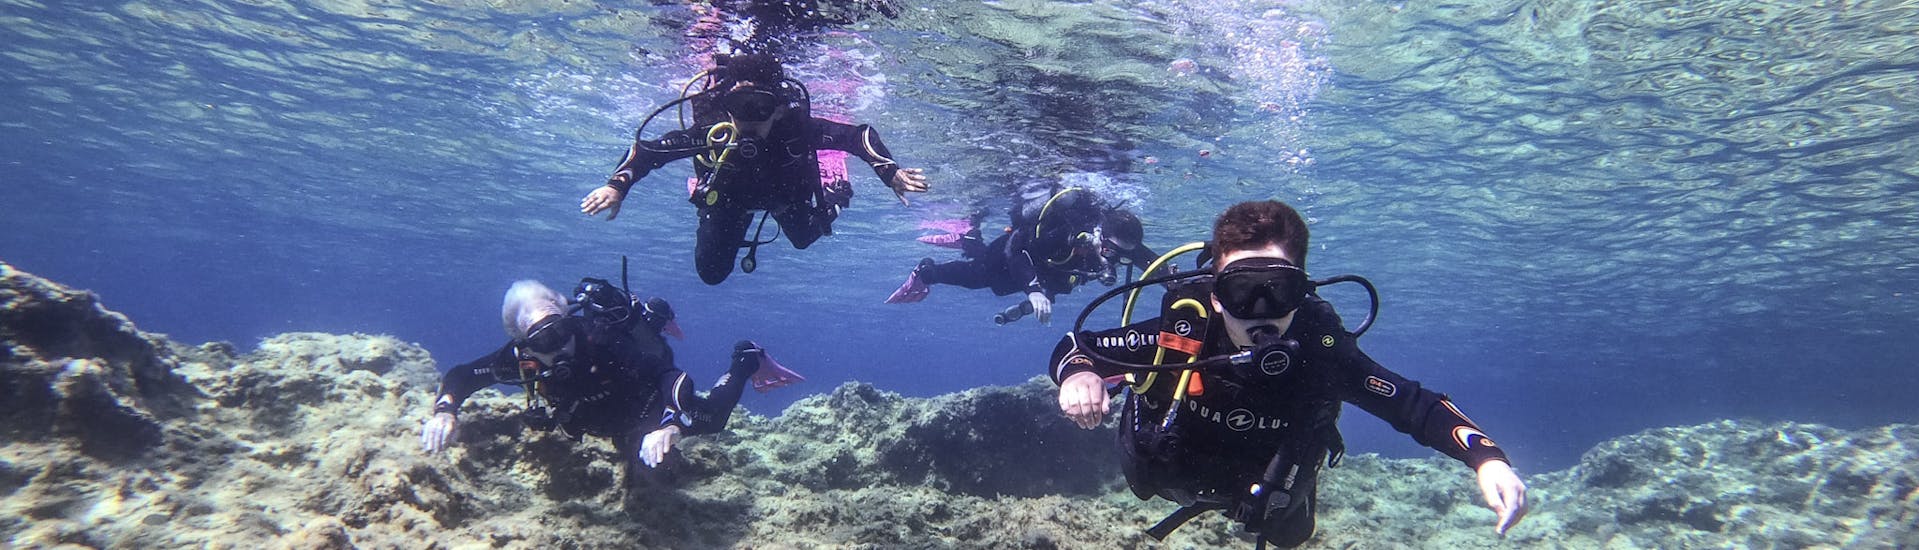 4 mensen die aan het duiken zijn tijdens de Discover Scuba Duiken voor beginners van ABC Diving Malta.